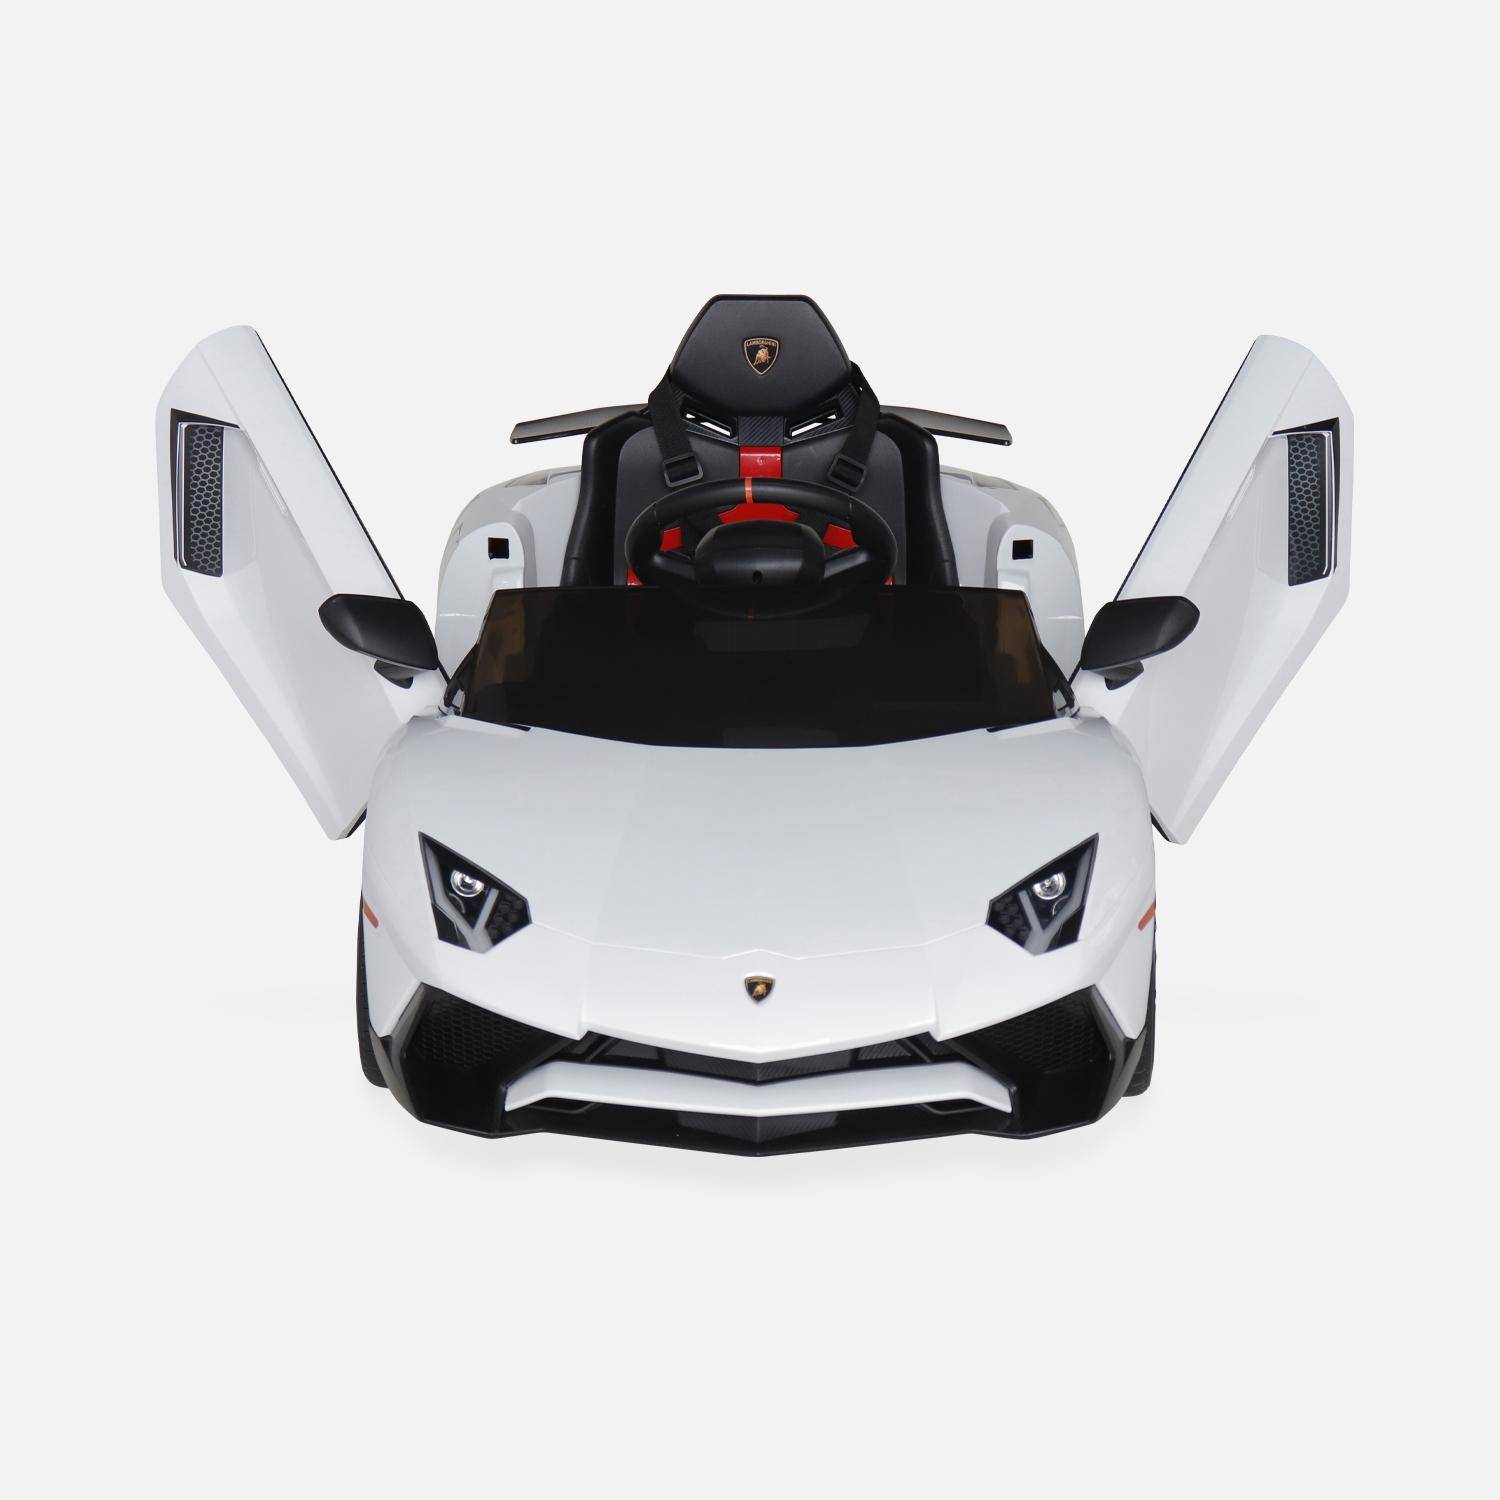 12V Lamborghini elektrische kinderauto, wit, 1 zitplaats, met autoradio, afstandsbediening, MP3, USB-poort en koplampen. Snelle levering, 2 jaar garantie. Photo6